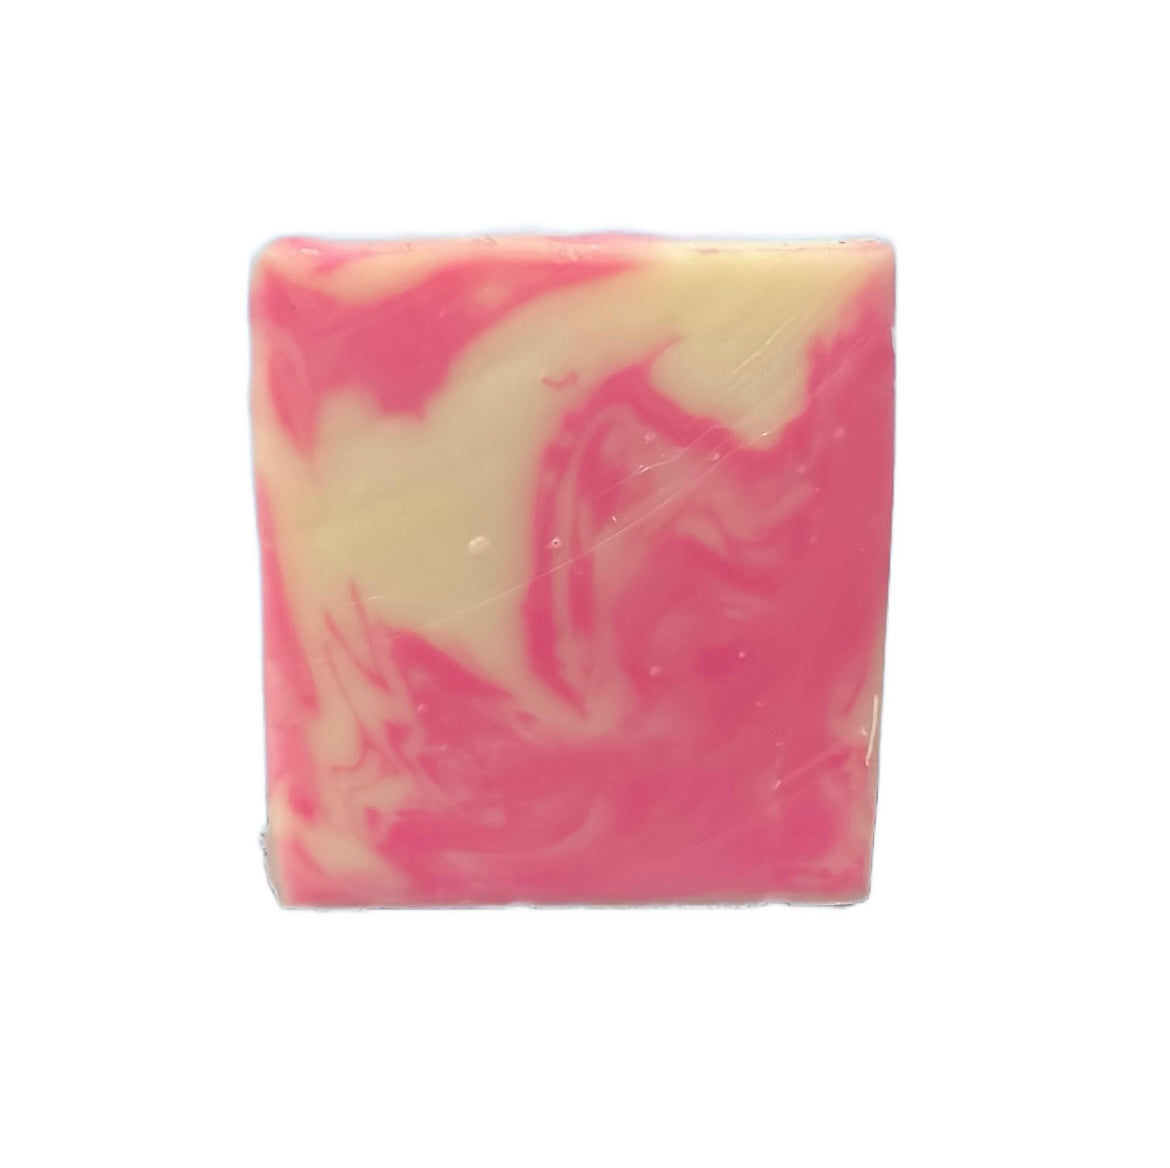 Rose Quartz Soap